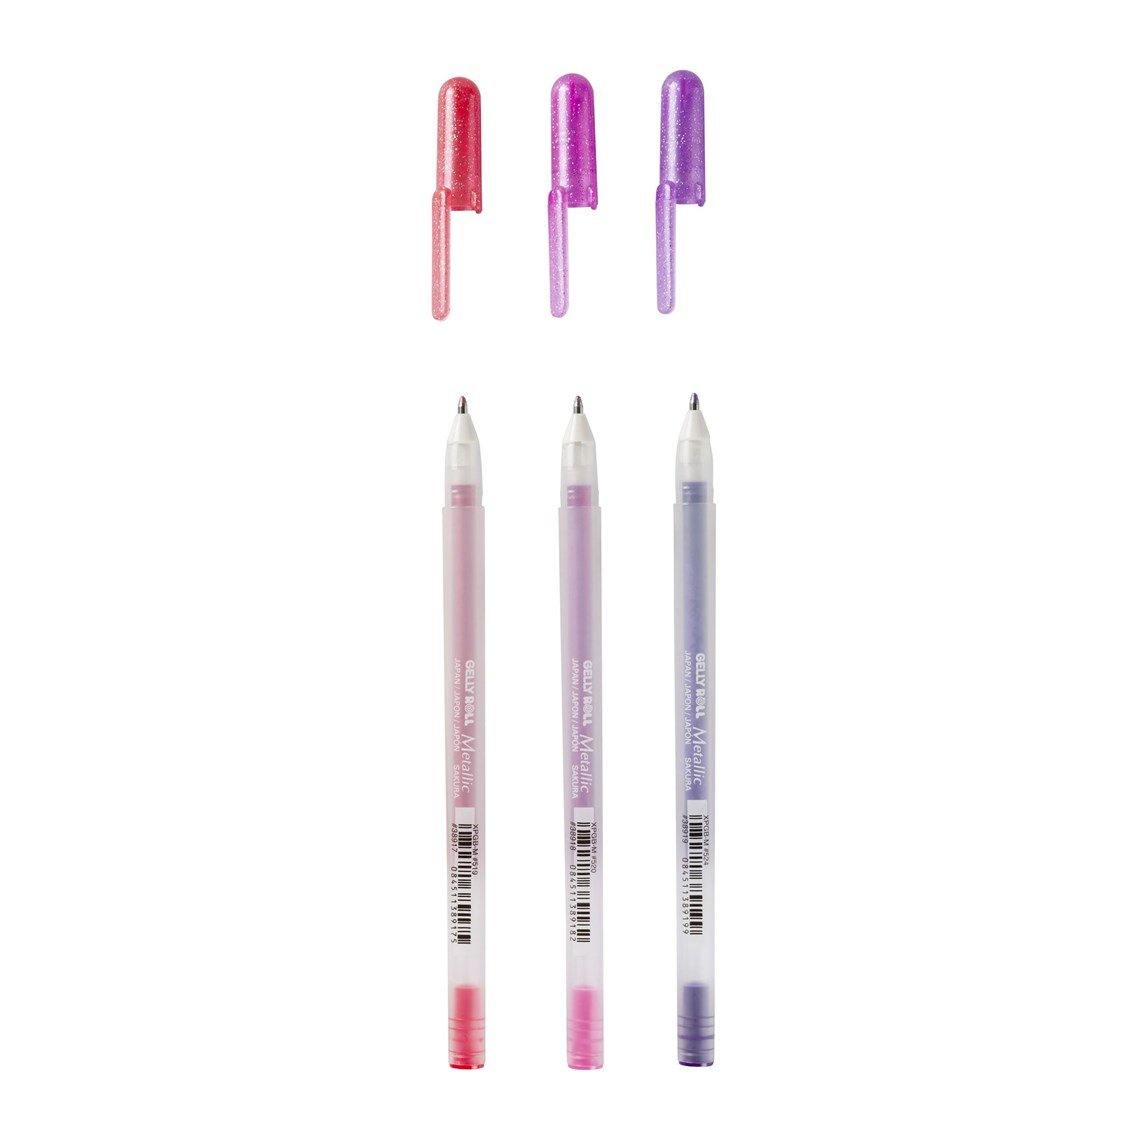 Sakura Gelly Roll Gel Pens - Metallic Sweets, 3 Pack - Dotgrid